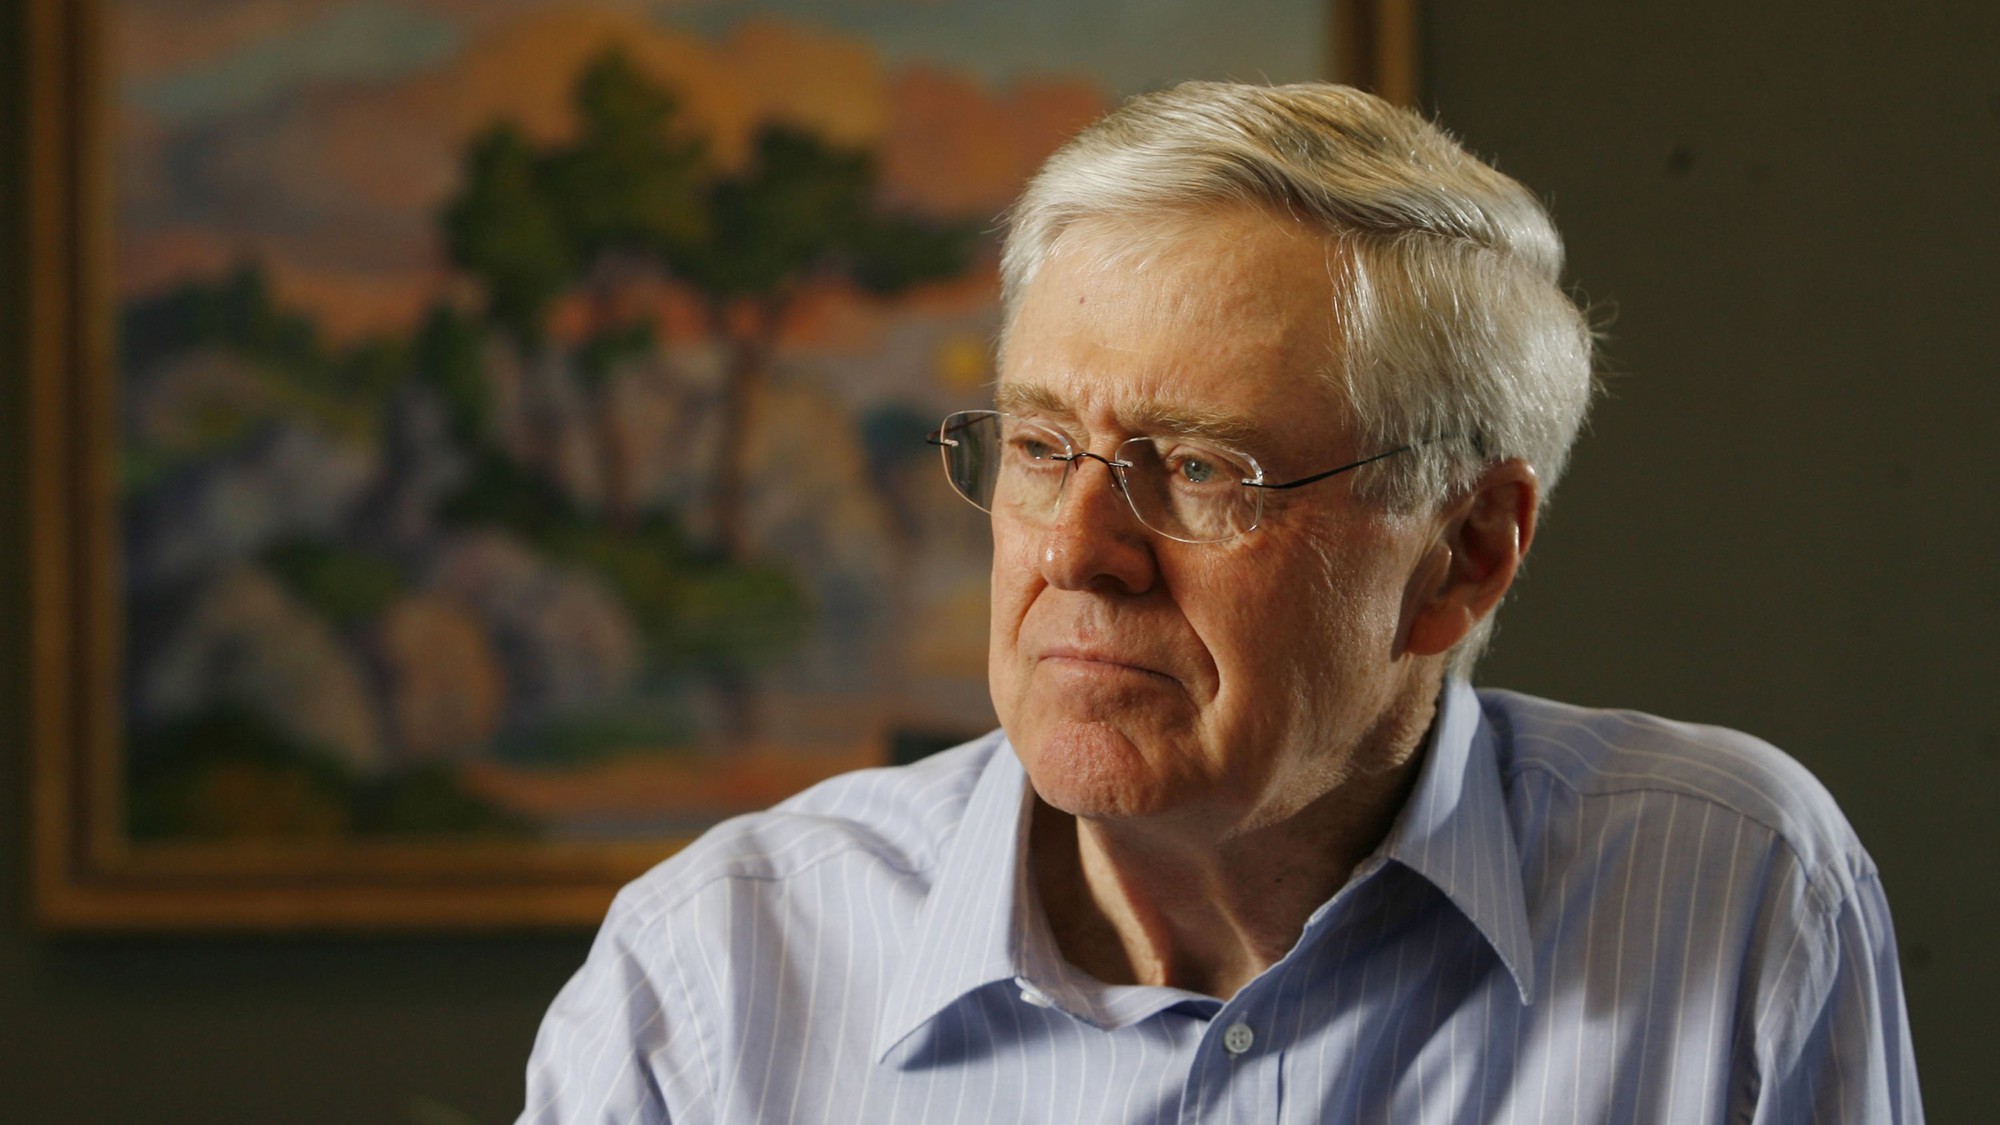 Charles Koch, 82 tuổi, là người điều hành đế chế Koch Industries với vai trò chủ tịch kiêm CEO cùng với em trai David. Tỷ phú này hiện sở hữu 47,6 tỷ USD.